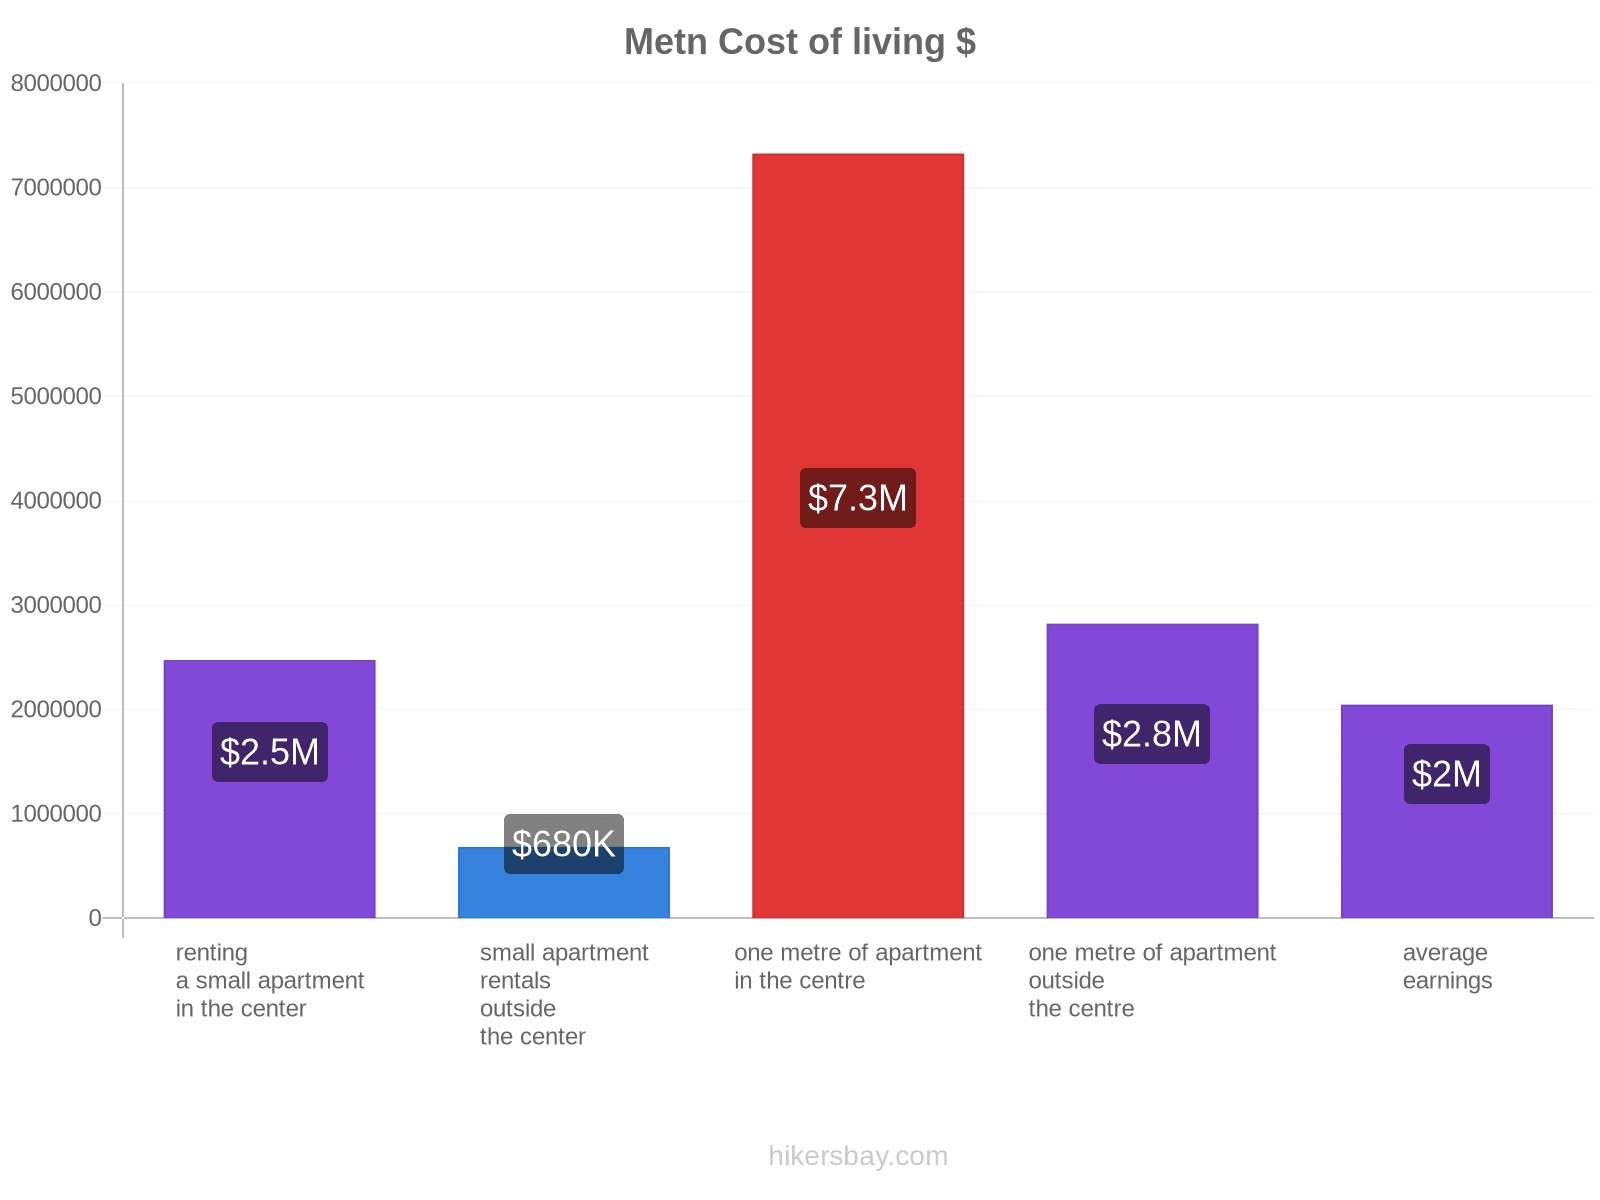 Metn cost of living hikersbay.com